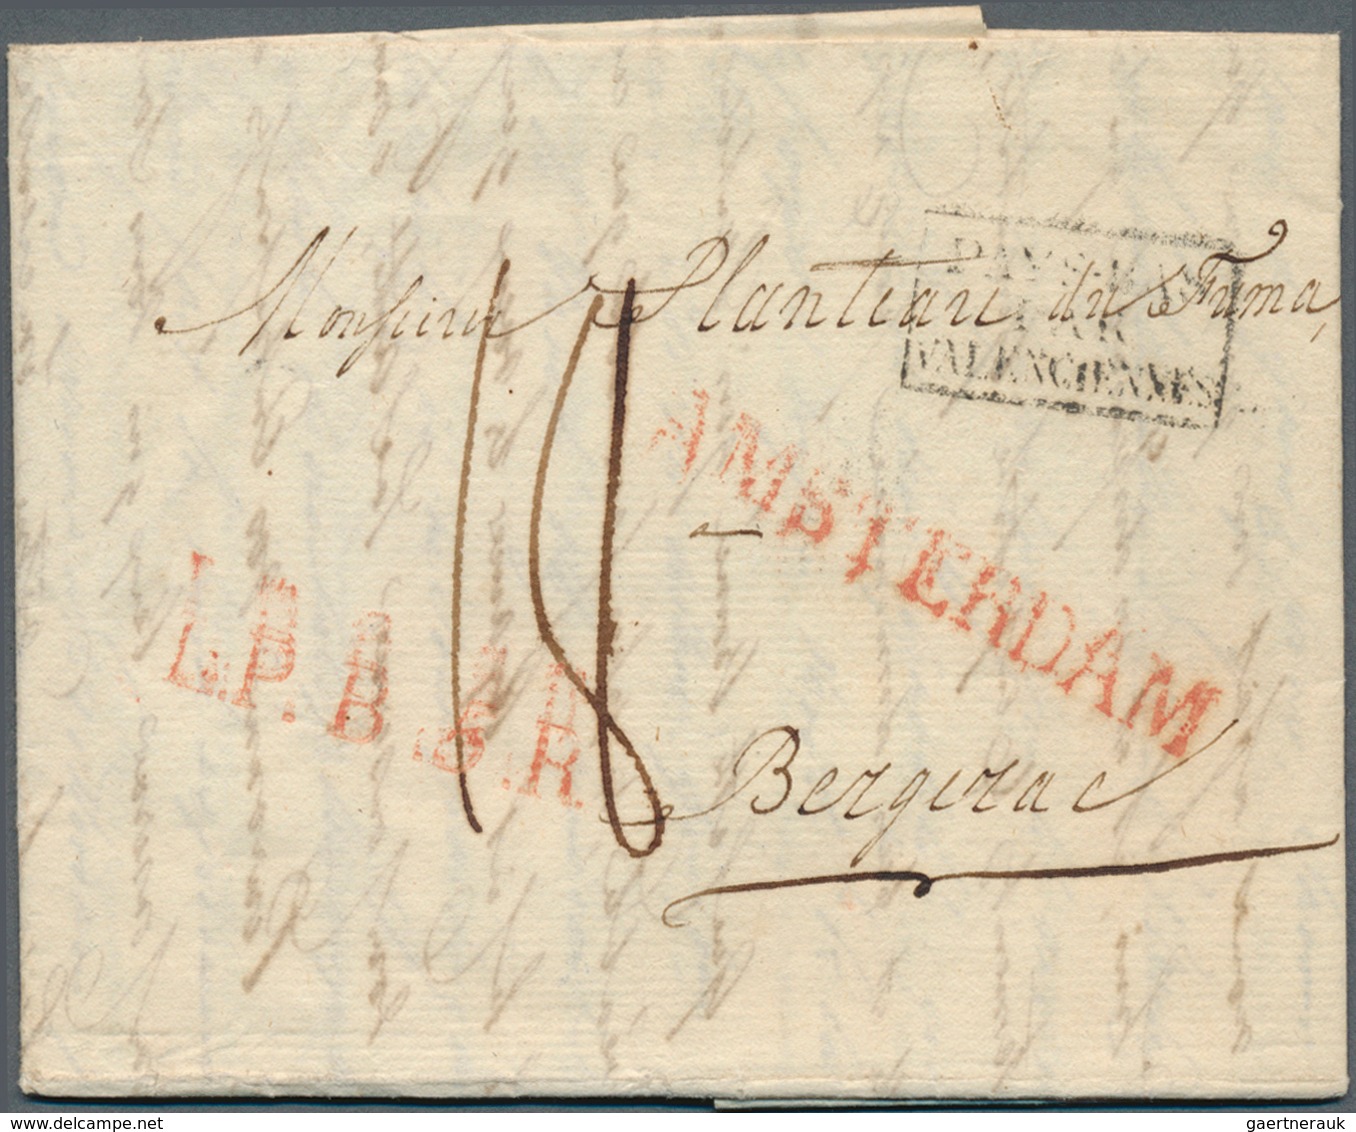 Niederlande - Vorphilatelie: 1773/1861, 23 Belege mit diversen TRANSIT-Stempeln, u.a. "D'HOLLANDE",